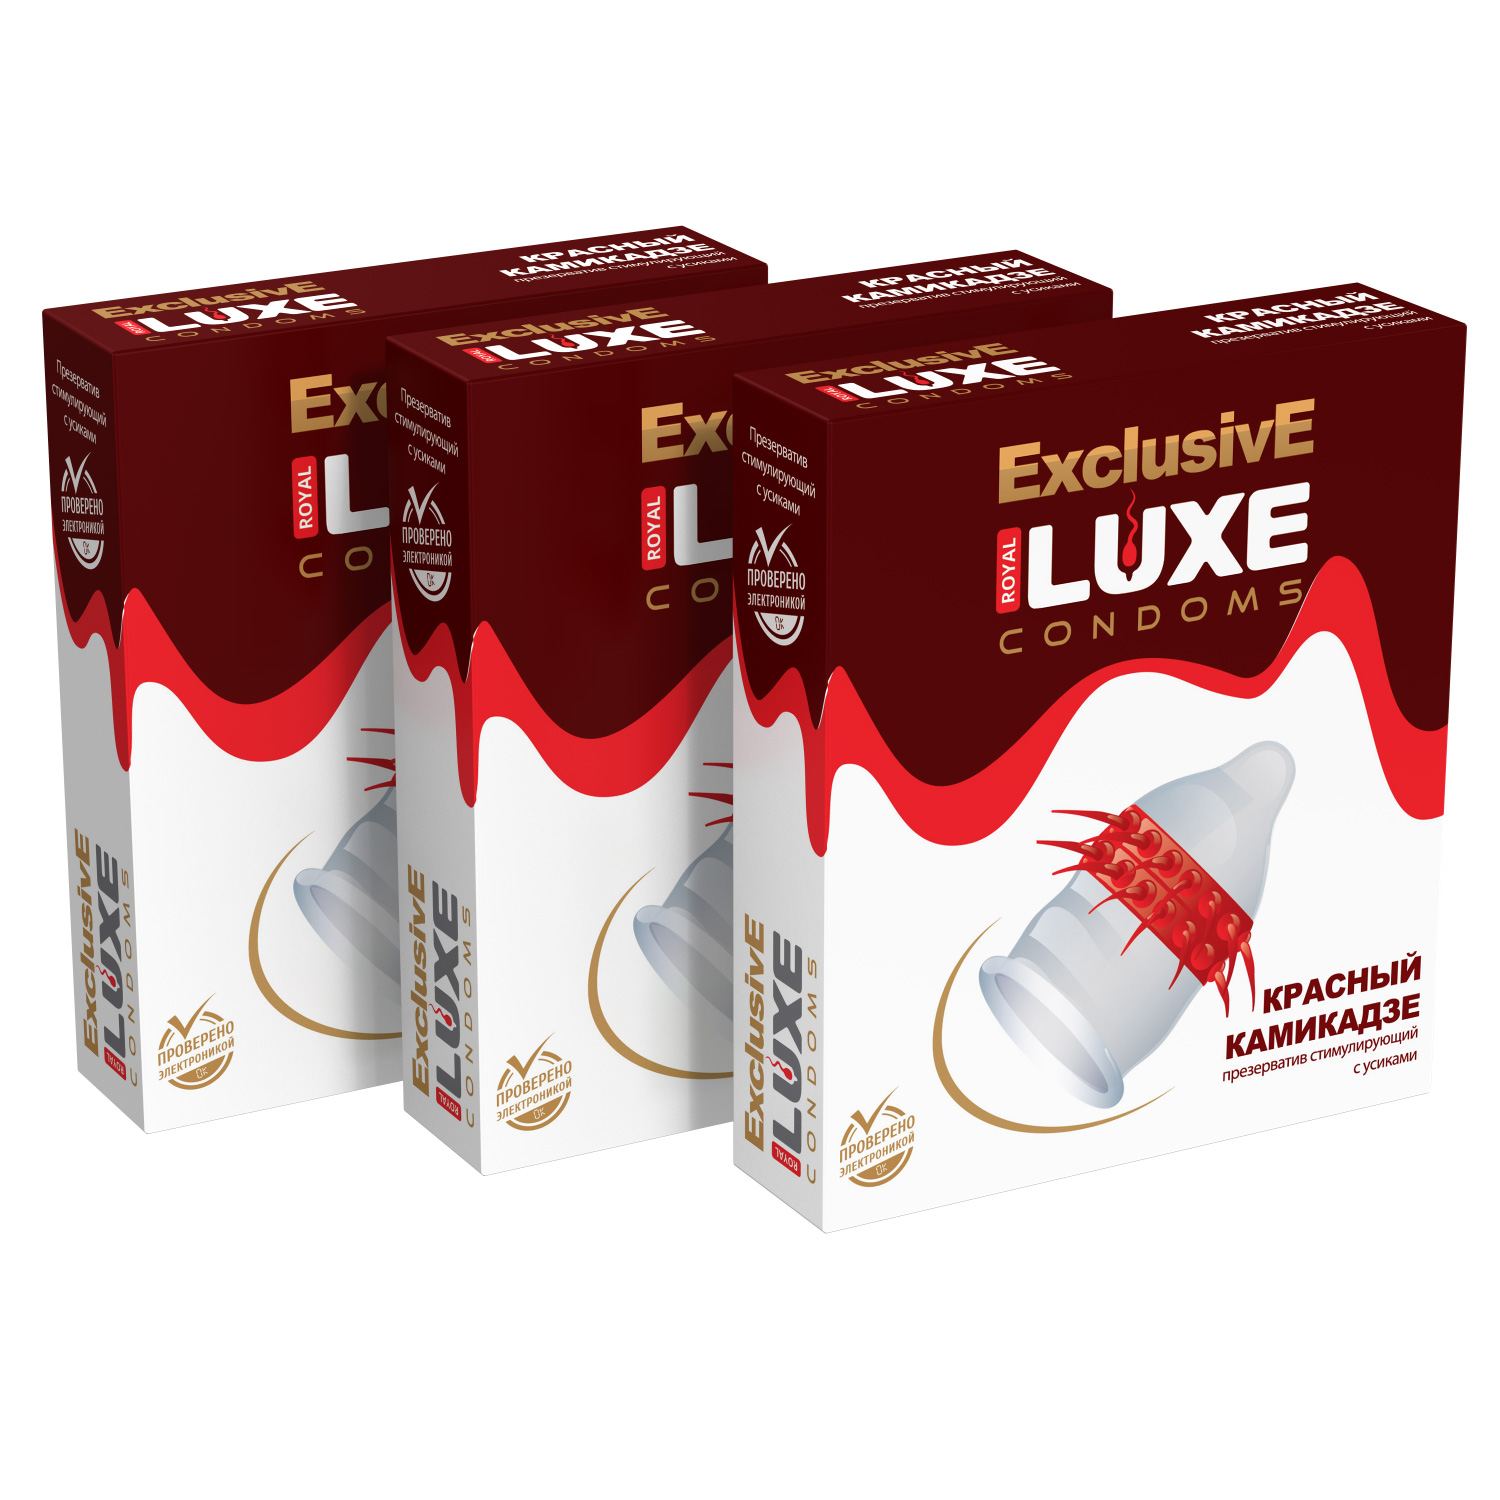 Презервативы Luxe Эксклюзив Красный камикадзе комплект из 3 упаковок